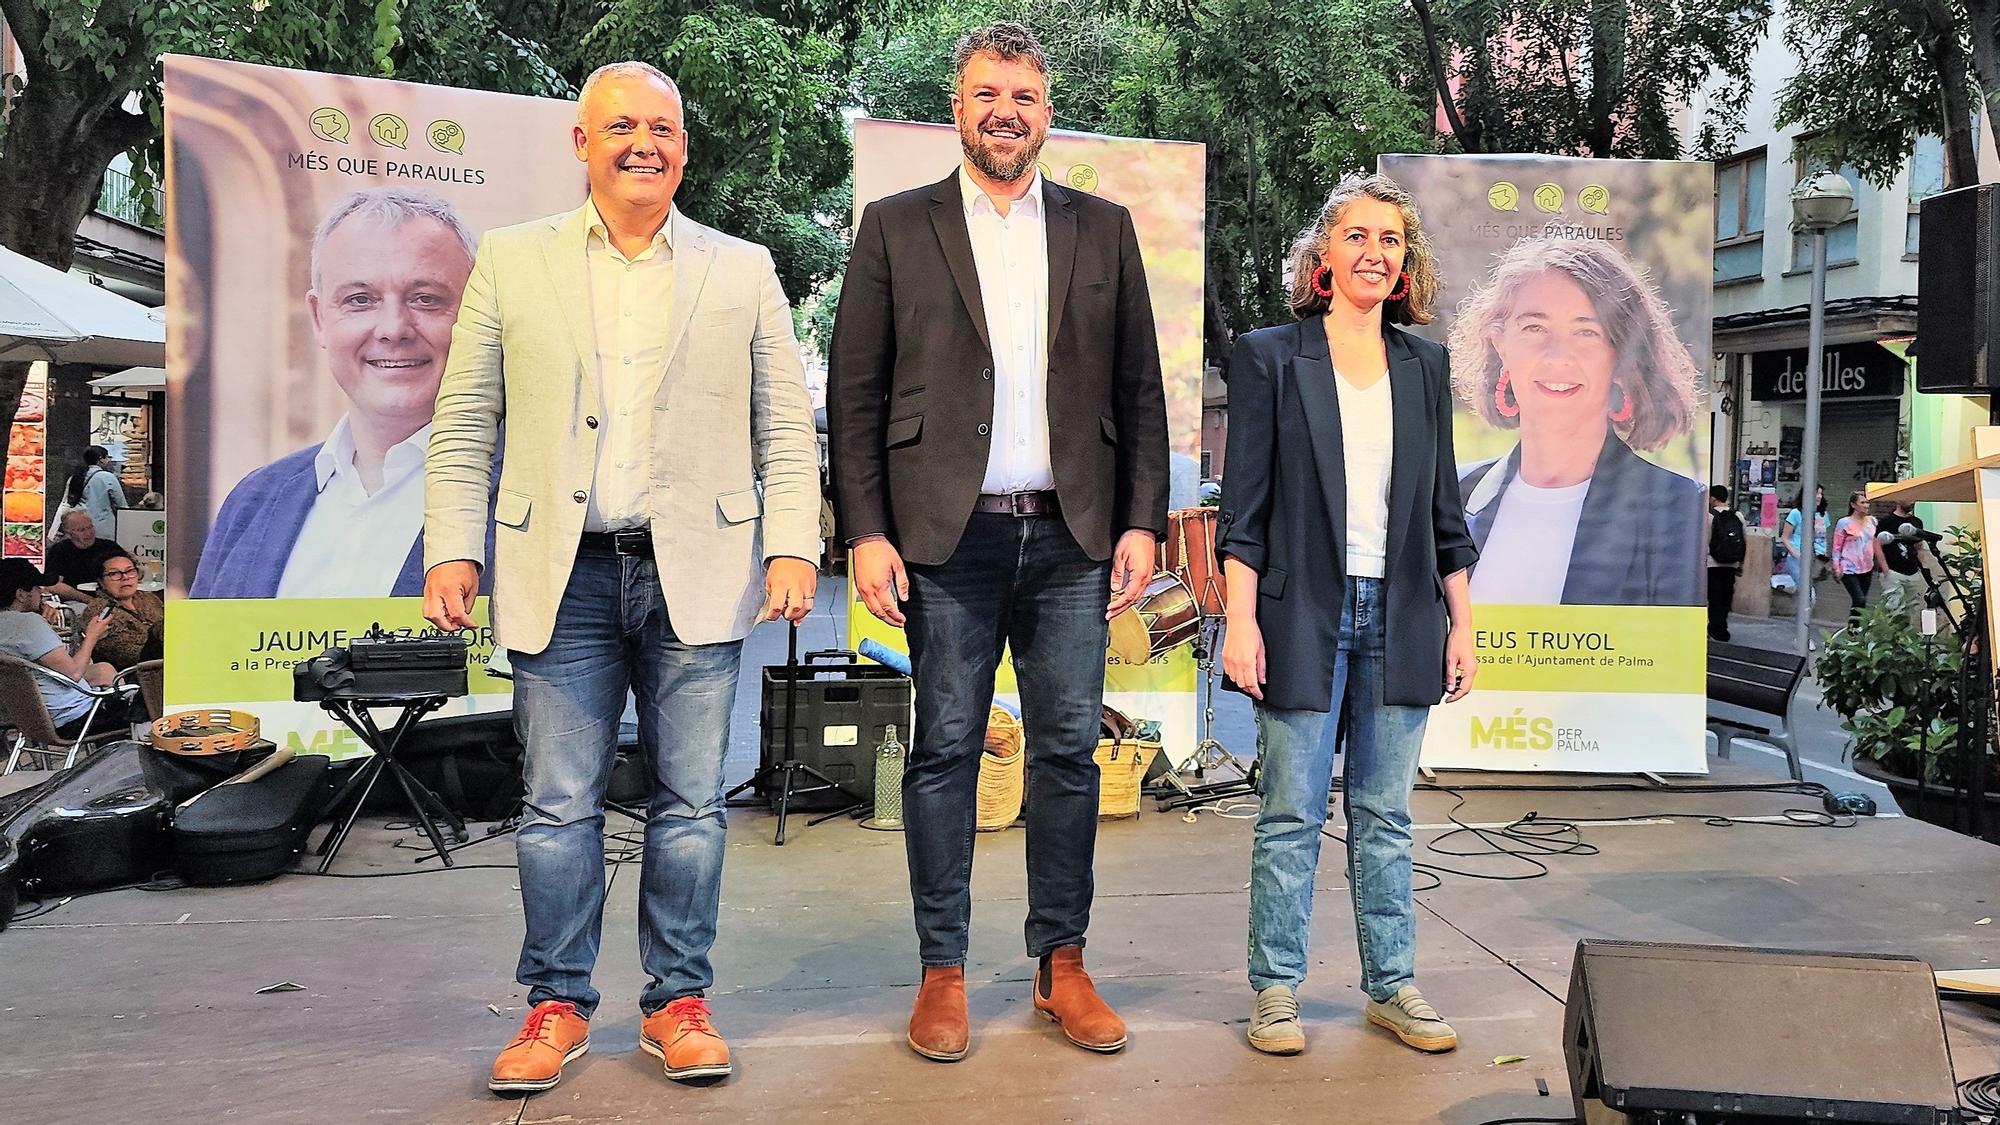 Cierre de la campaña electoral en Baleares: la izquierda pide una movilización masiva y la derecha conjura el cambio